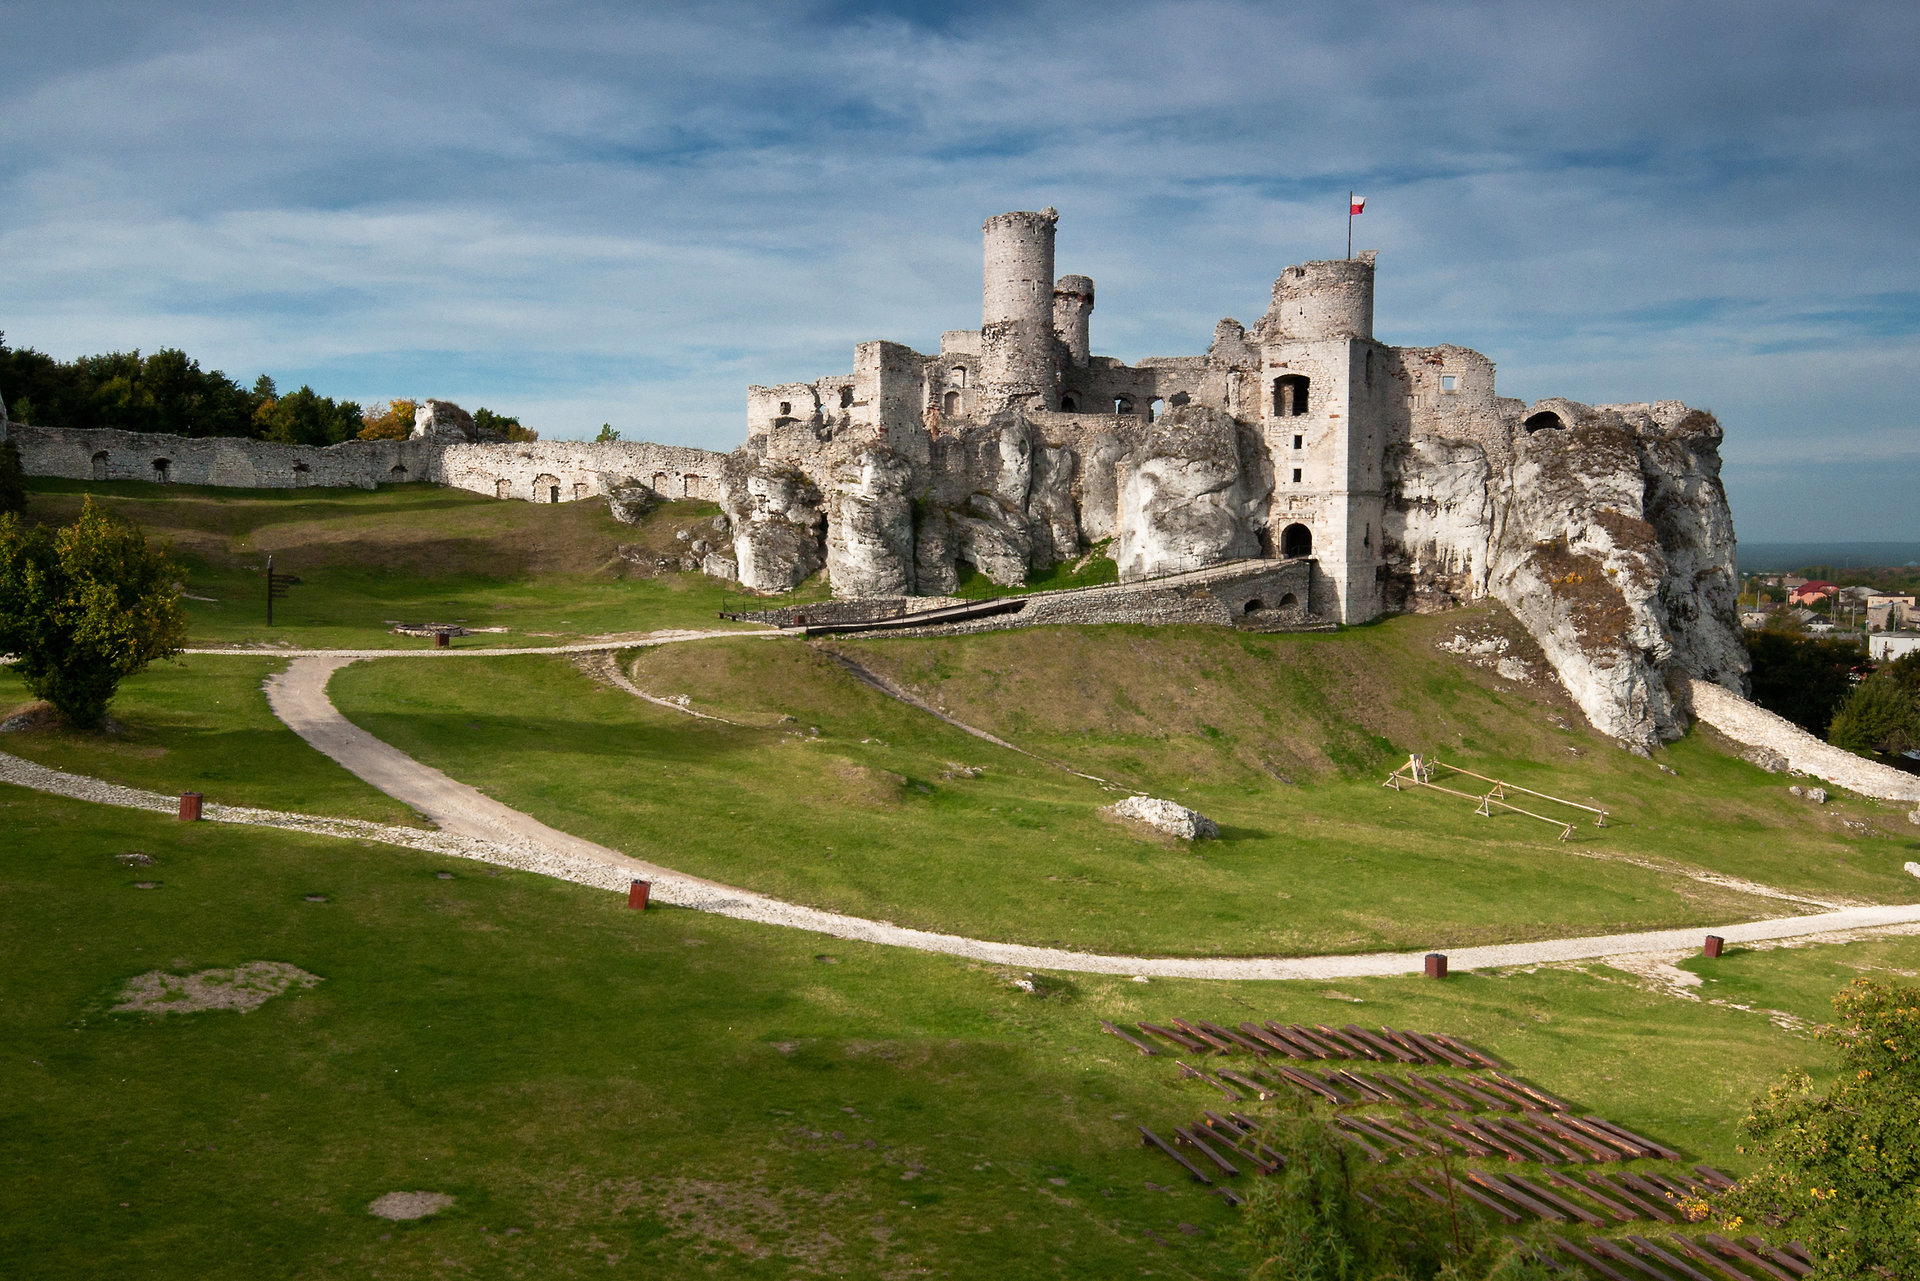 Fotografia prezentuje ruiny zamku Ogrodzieniec, umiejscowione na wzgórzu, do którego prowadzi jasna, kręta droga. Fragment zamku z prawej strony zdjęcia wbudowany jest w naturalne skały. Zamek zbudowany jest z jasnego kamienia - z piaskowca.